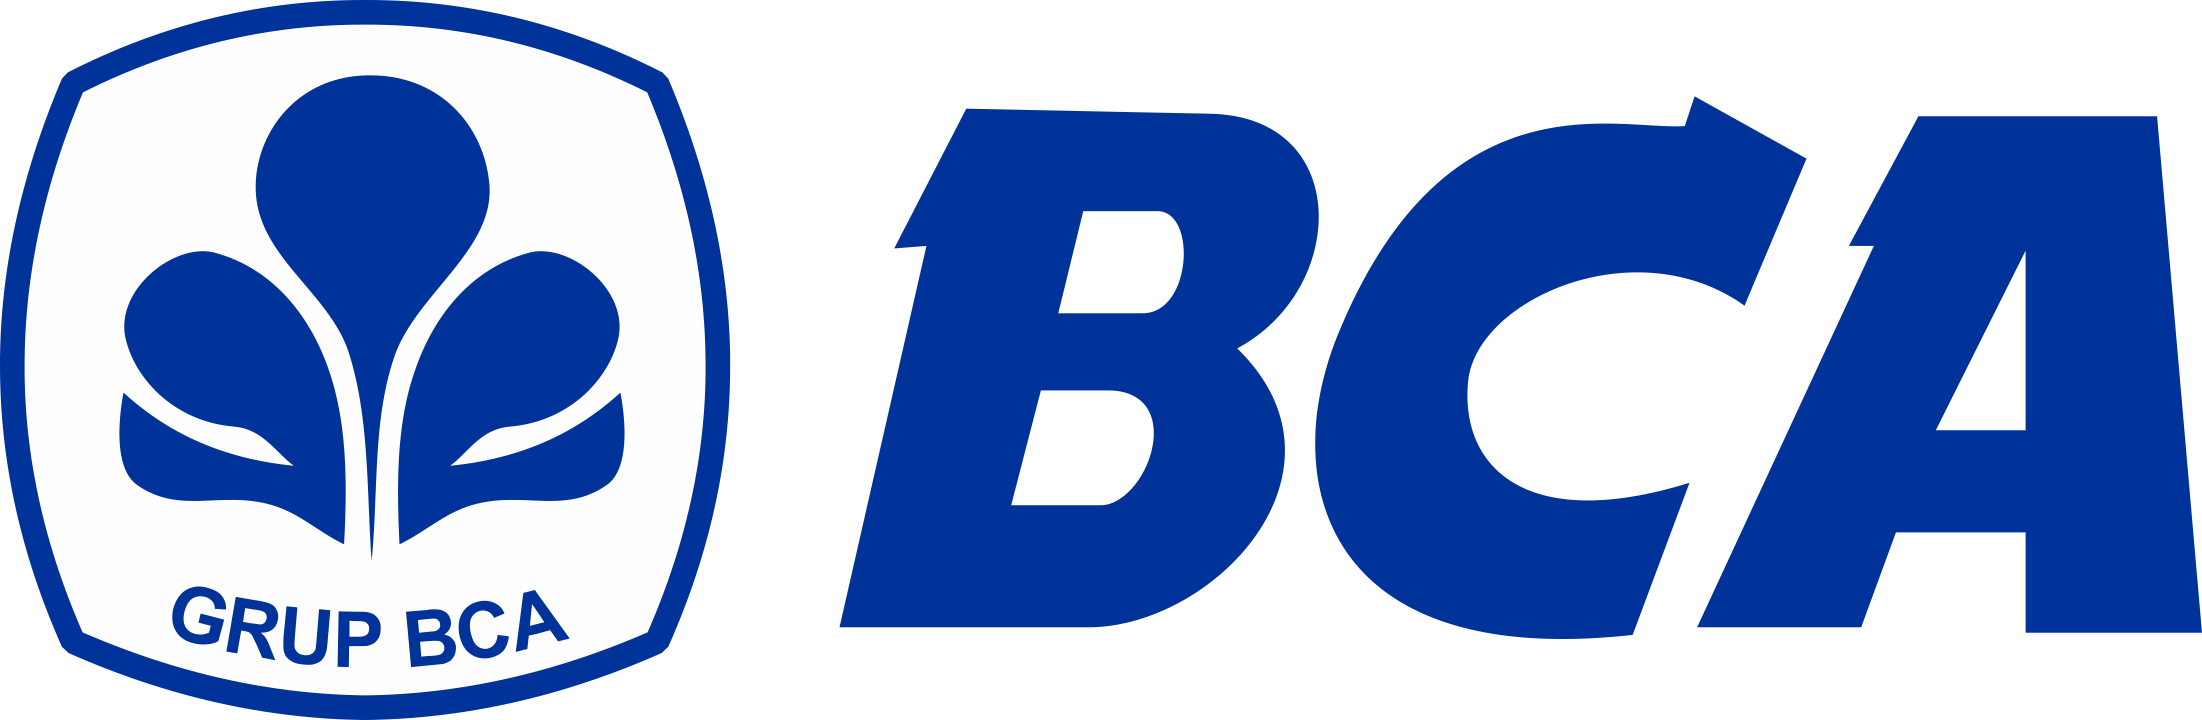 Bank-BCA-Logo-PNG-720p-FileVector69-1-1-1-1-1.png